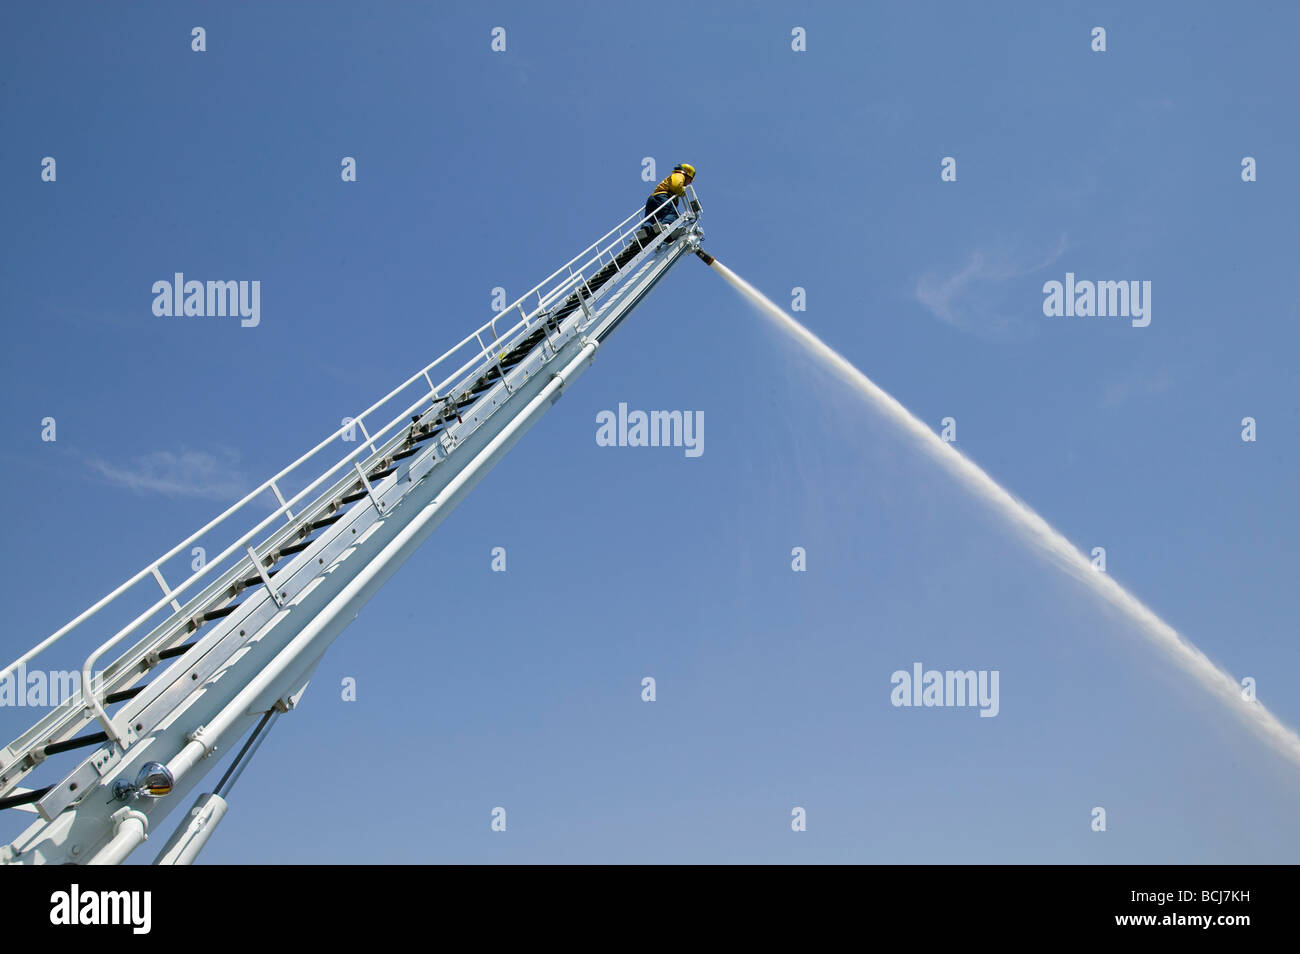 Feuerwehrmann Feuerwehrmann auf hohen Leiter mit Feuerwehrschlauch Spritzen Wasserstrahl gegen Himmel Stockfoto